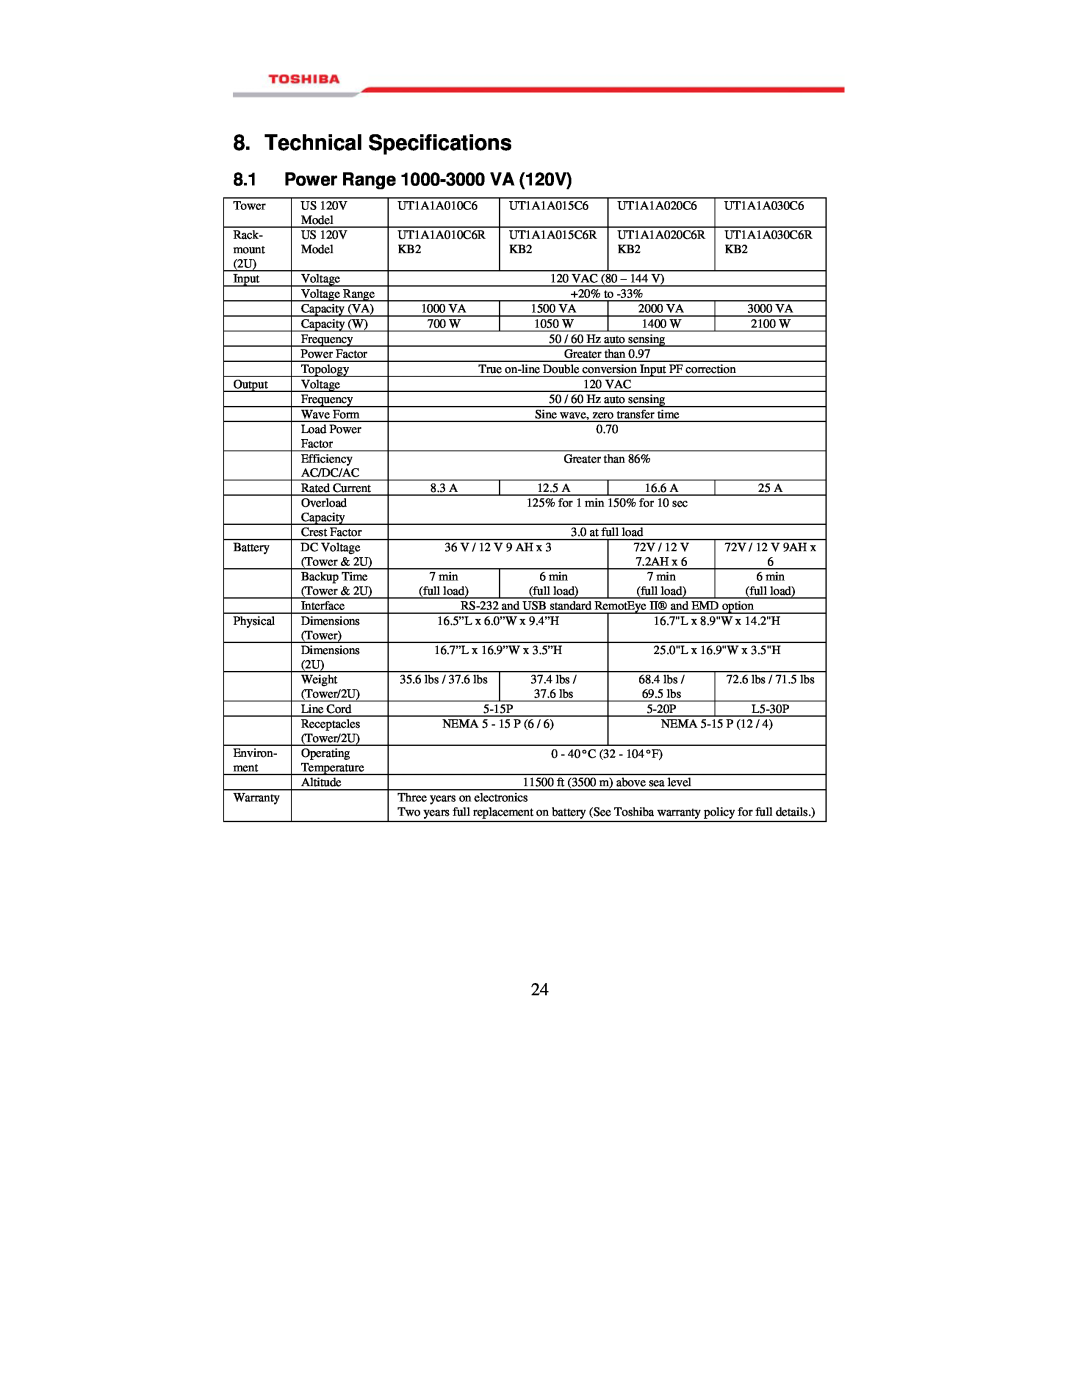 Toshiba manual Technical Specifications, Power Range 1000-3000 VA 